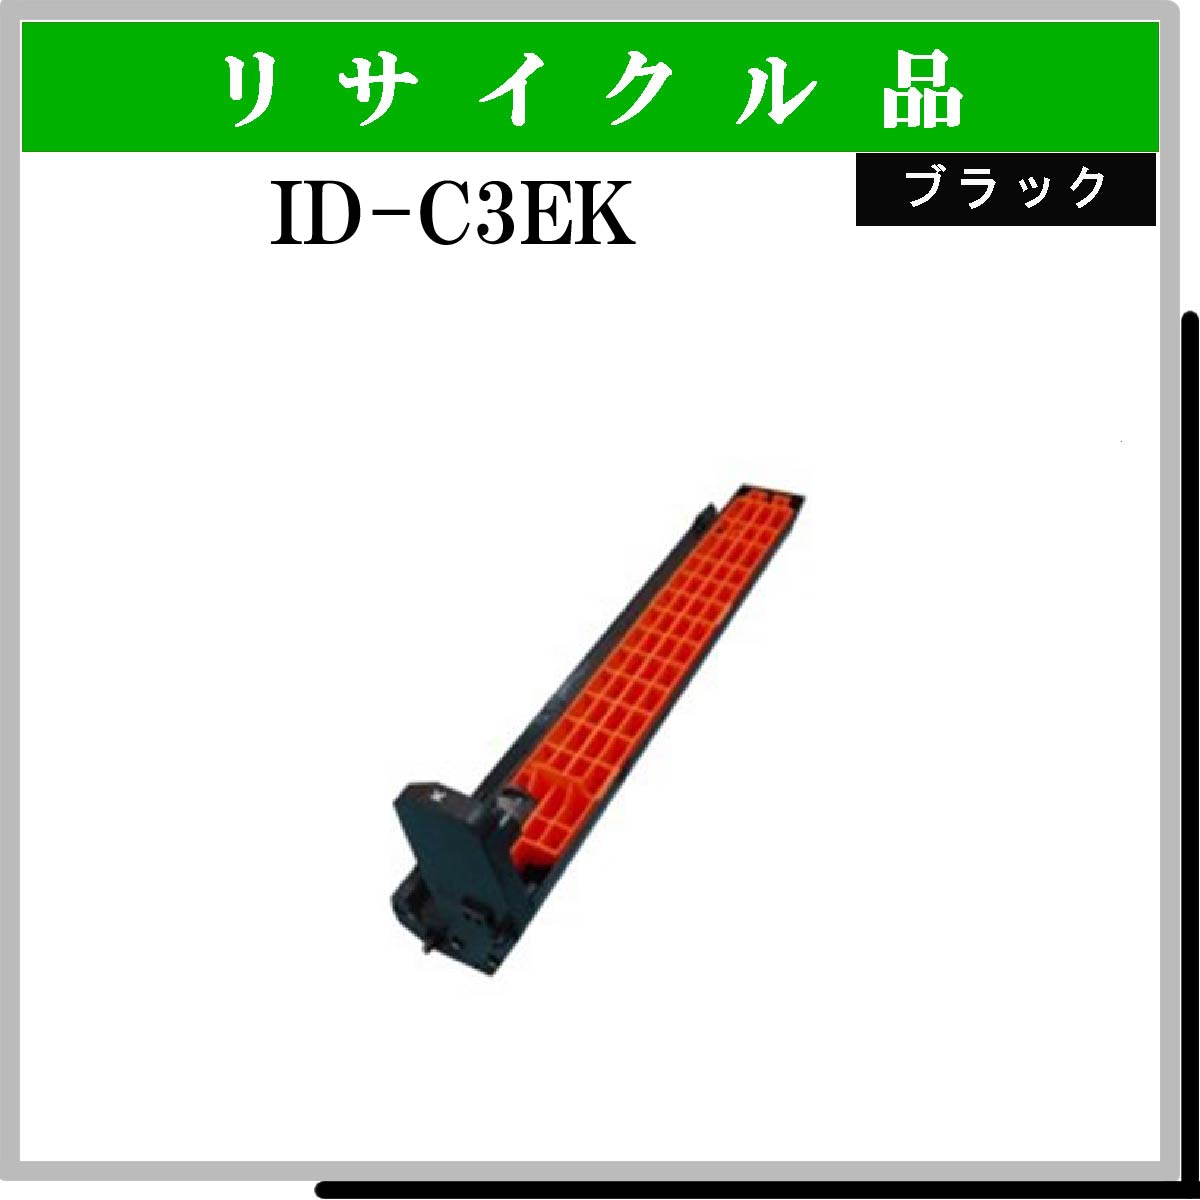 ID-C3EK